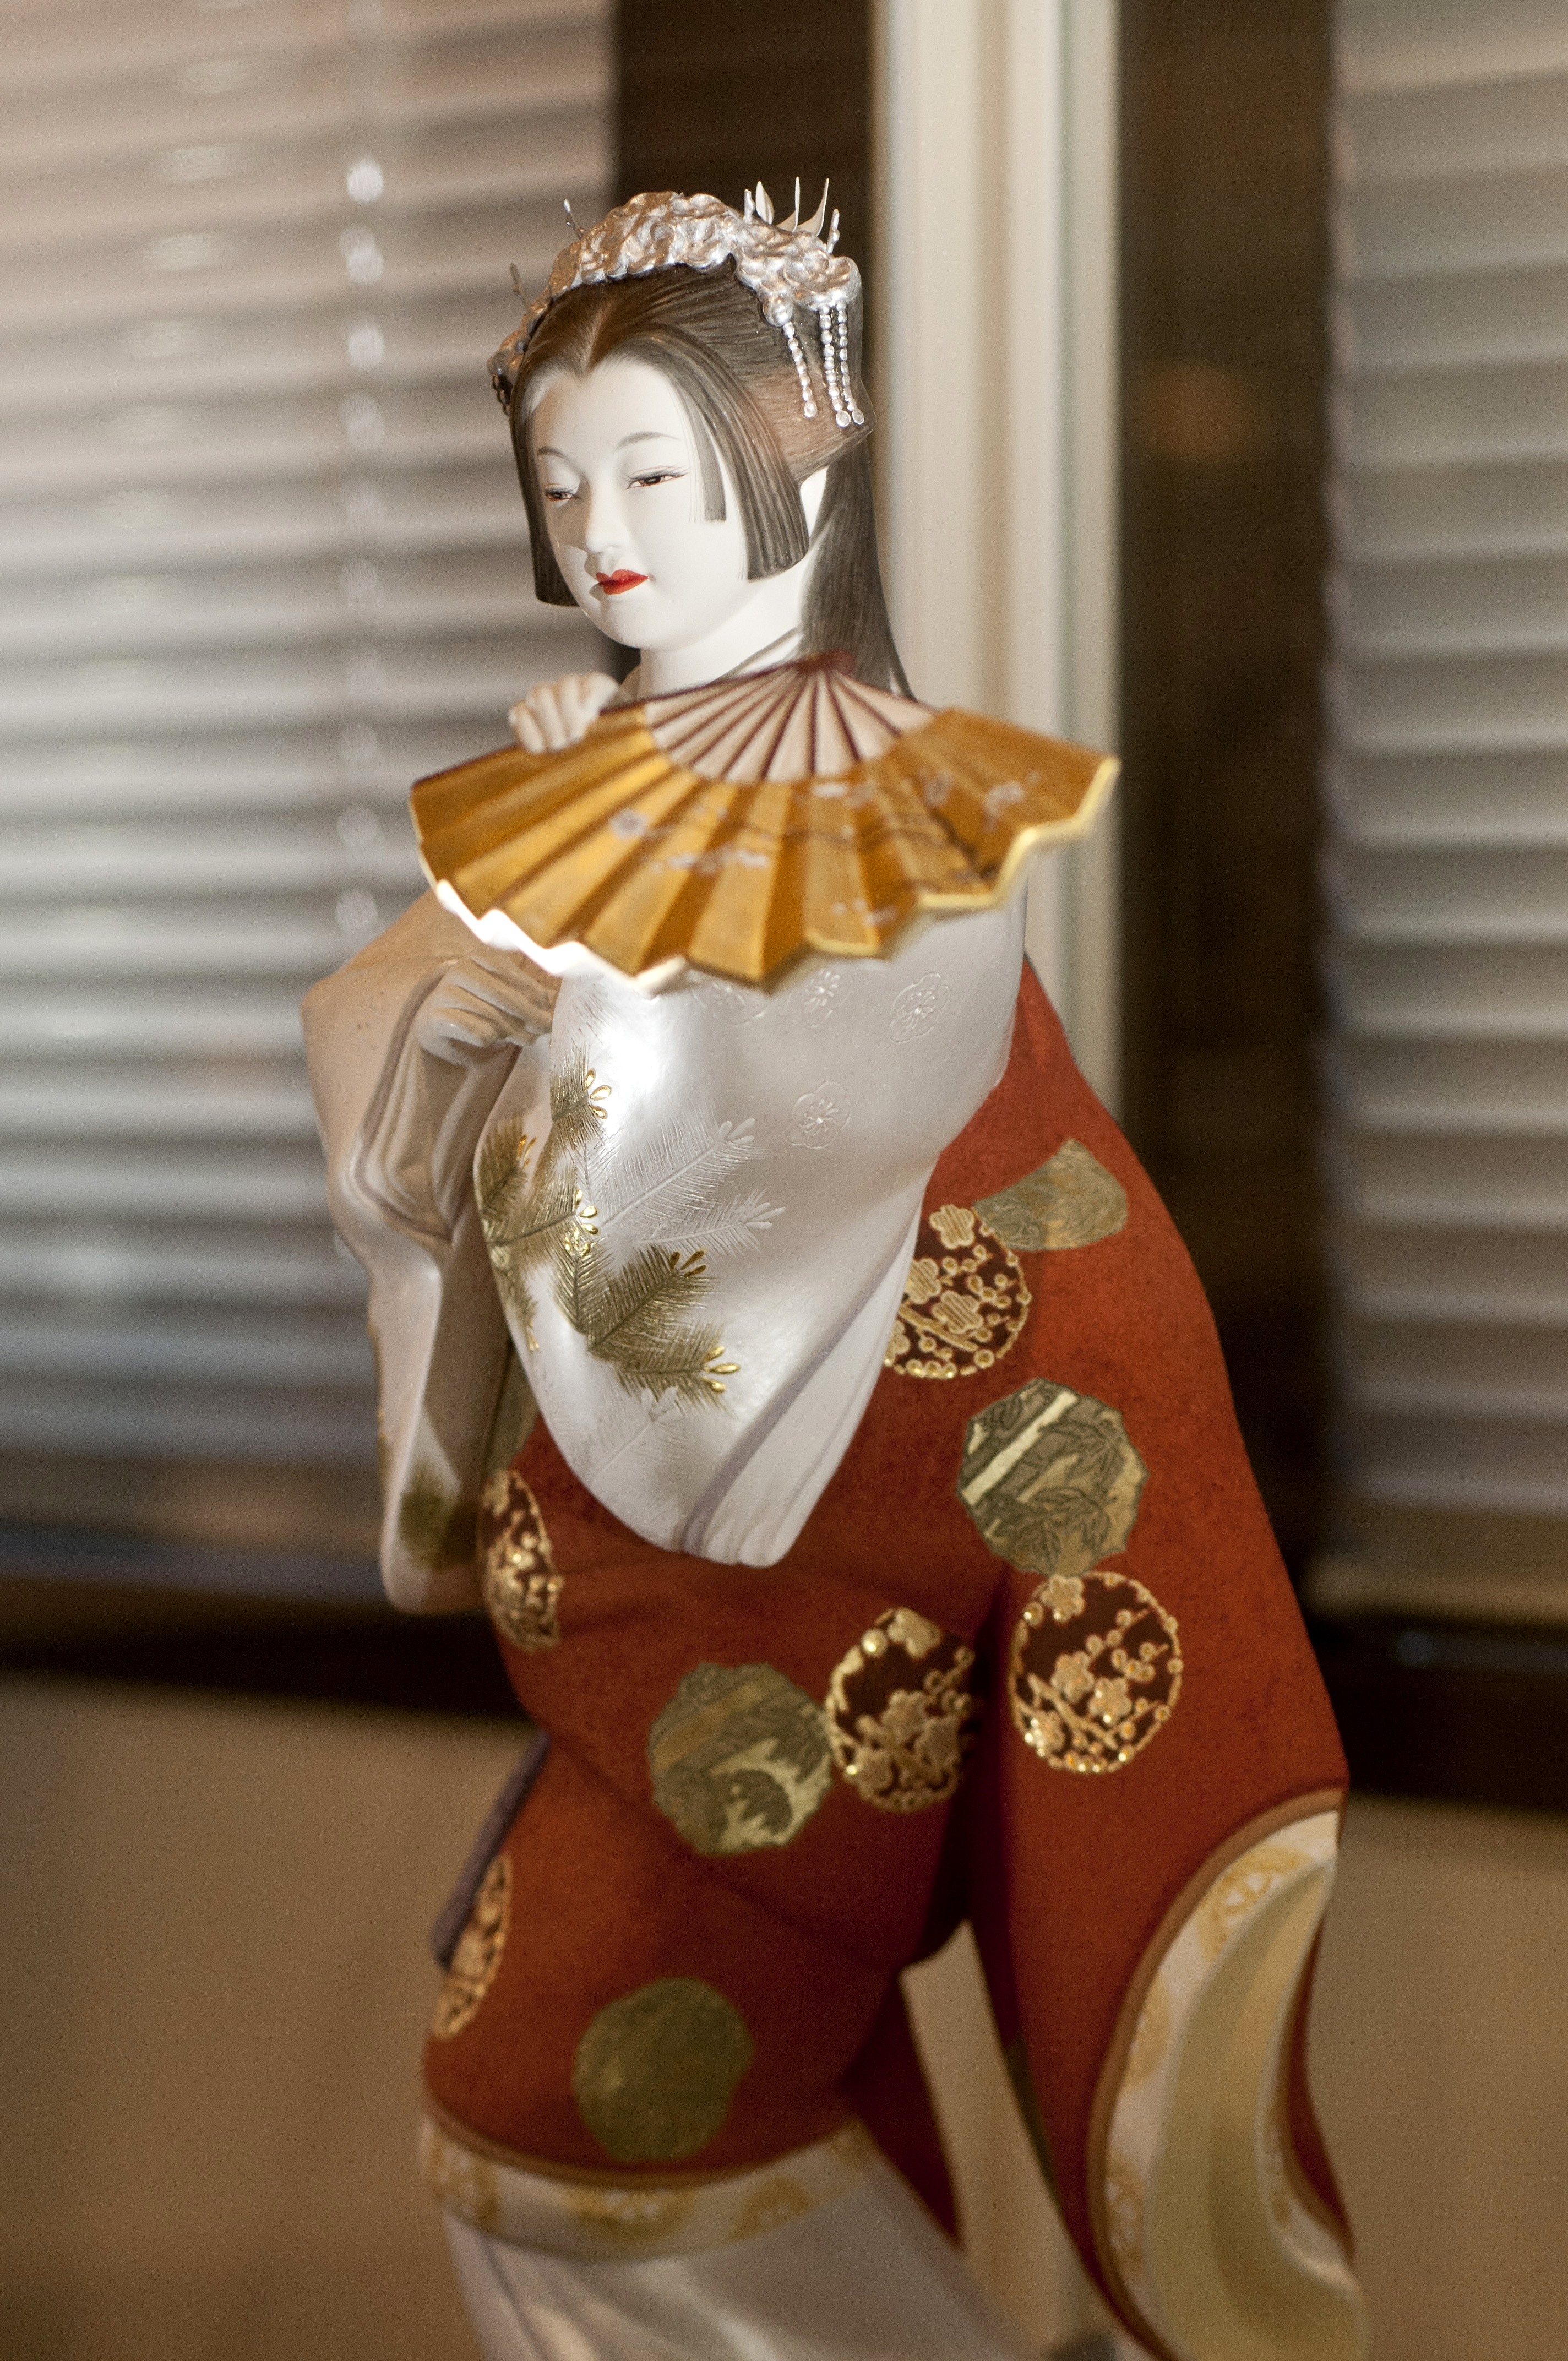 はかた伝統工芸館・展示品(2011)の画像